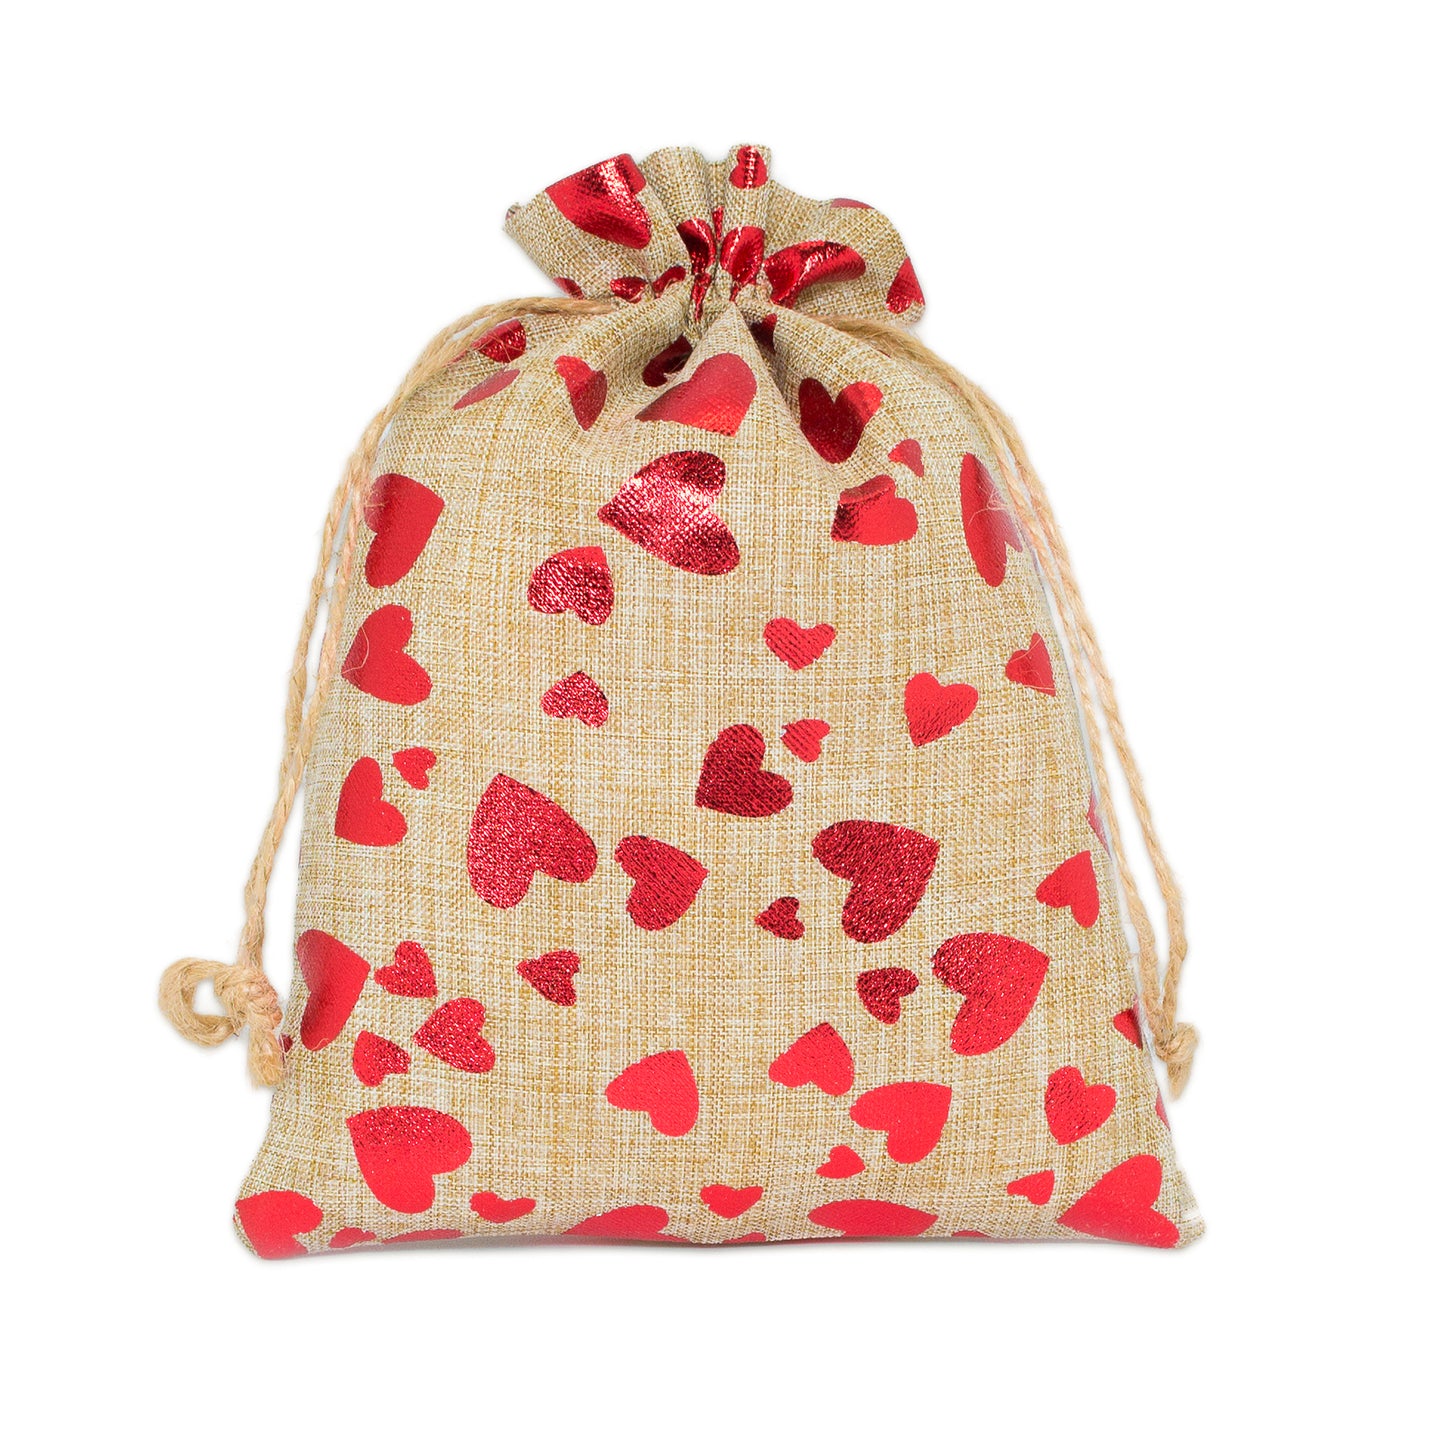 12" x 16" Jute Burlap Red Heart Drawstring Gift Bags